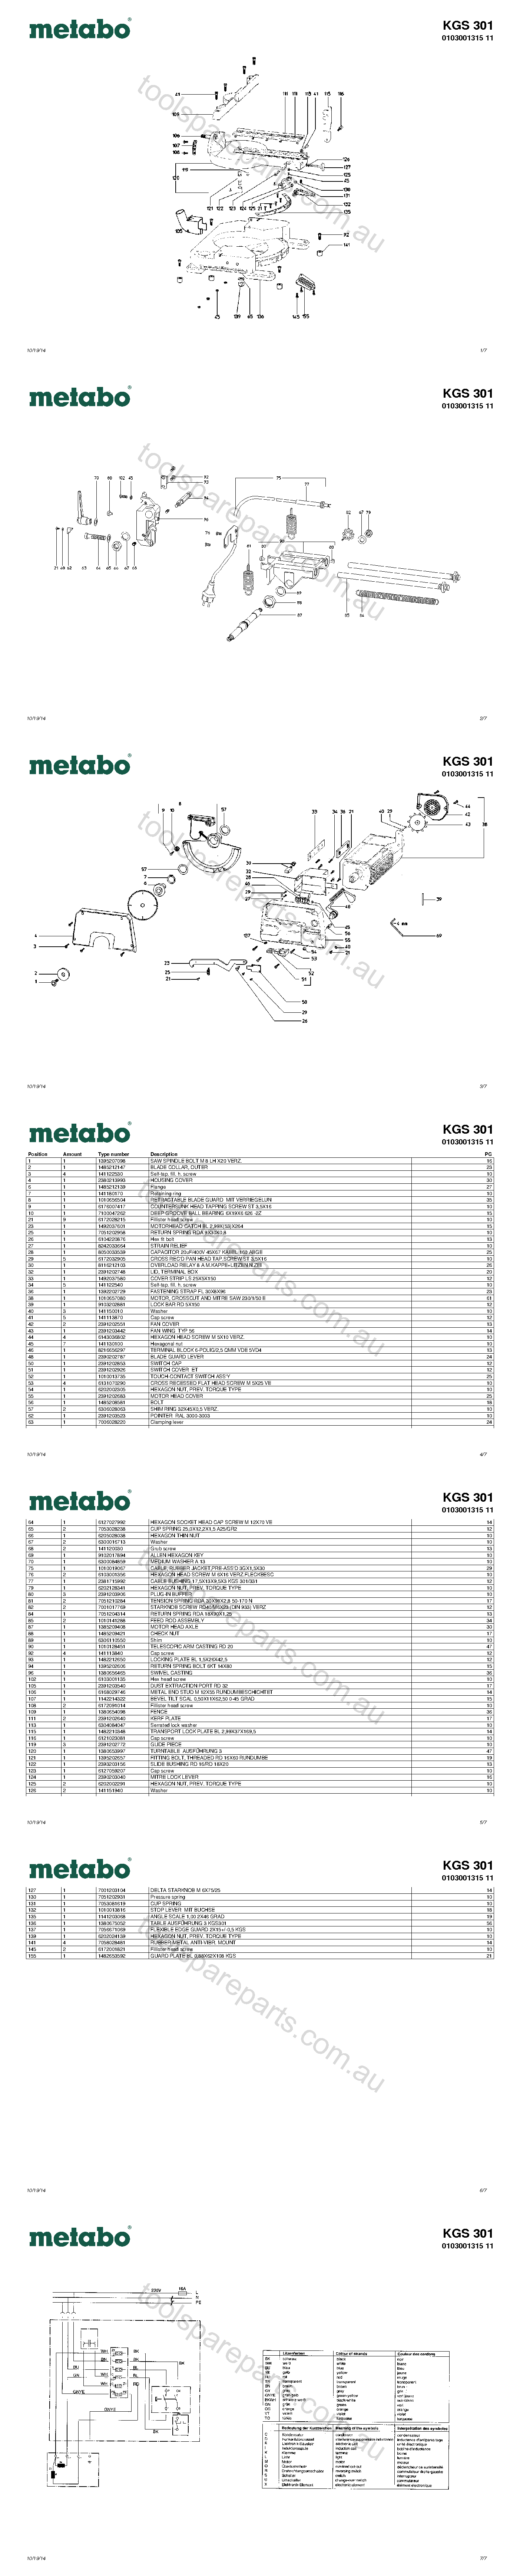 Metabo KGS 301 0103001315 11  Diagram 1